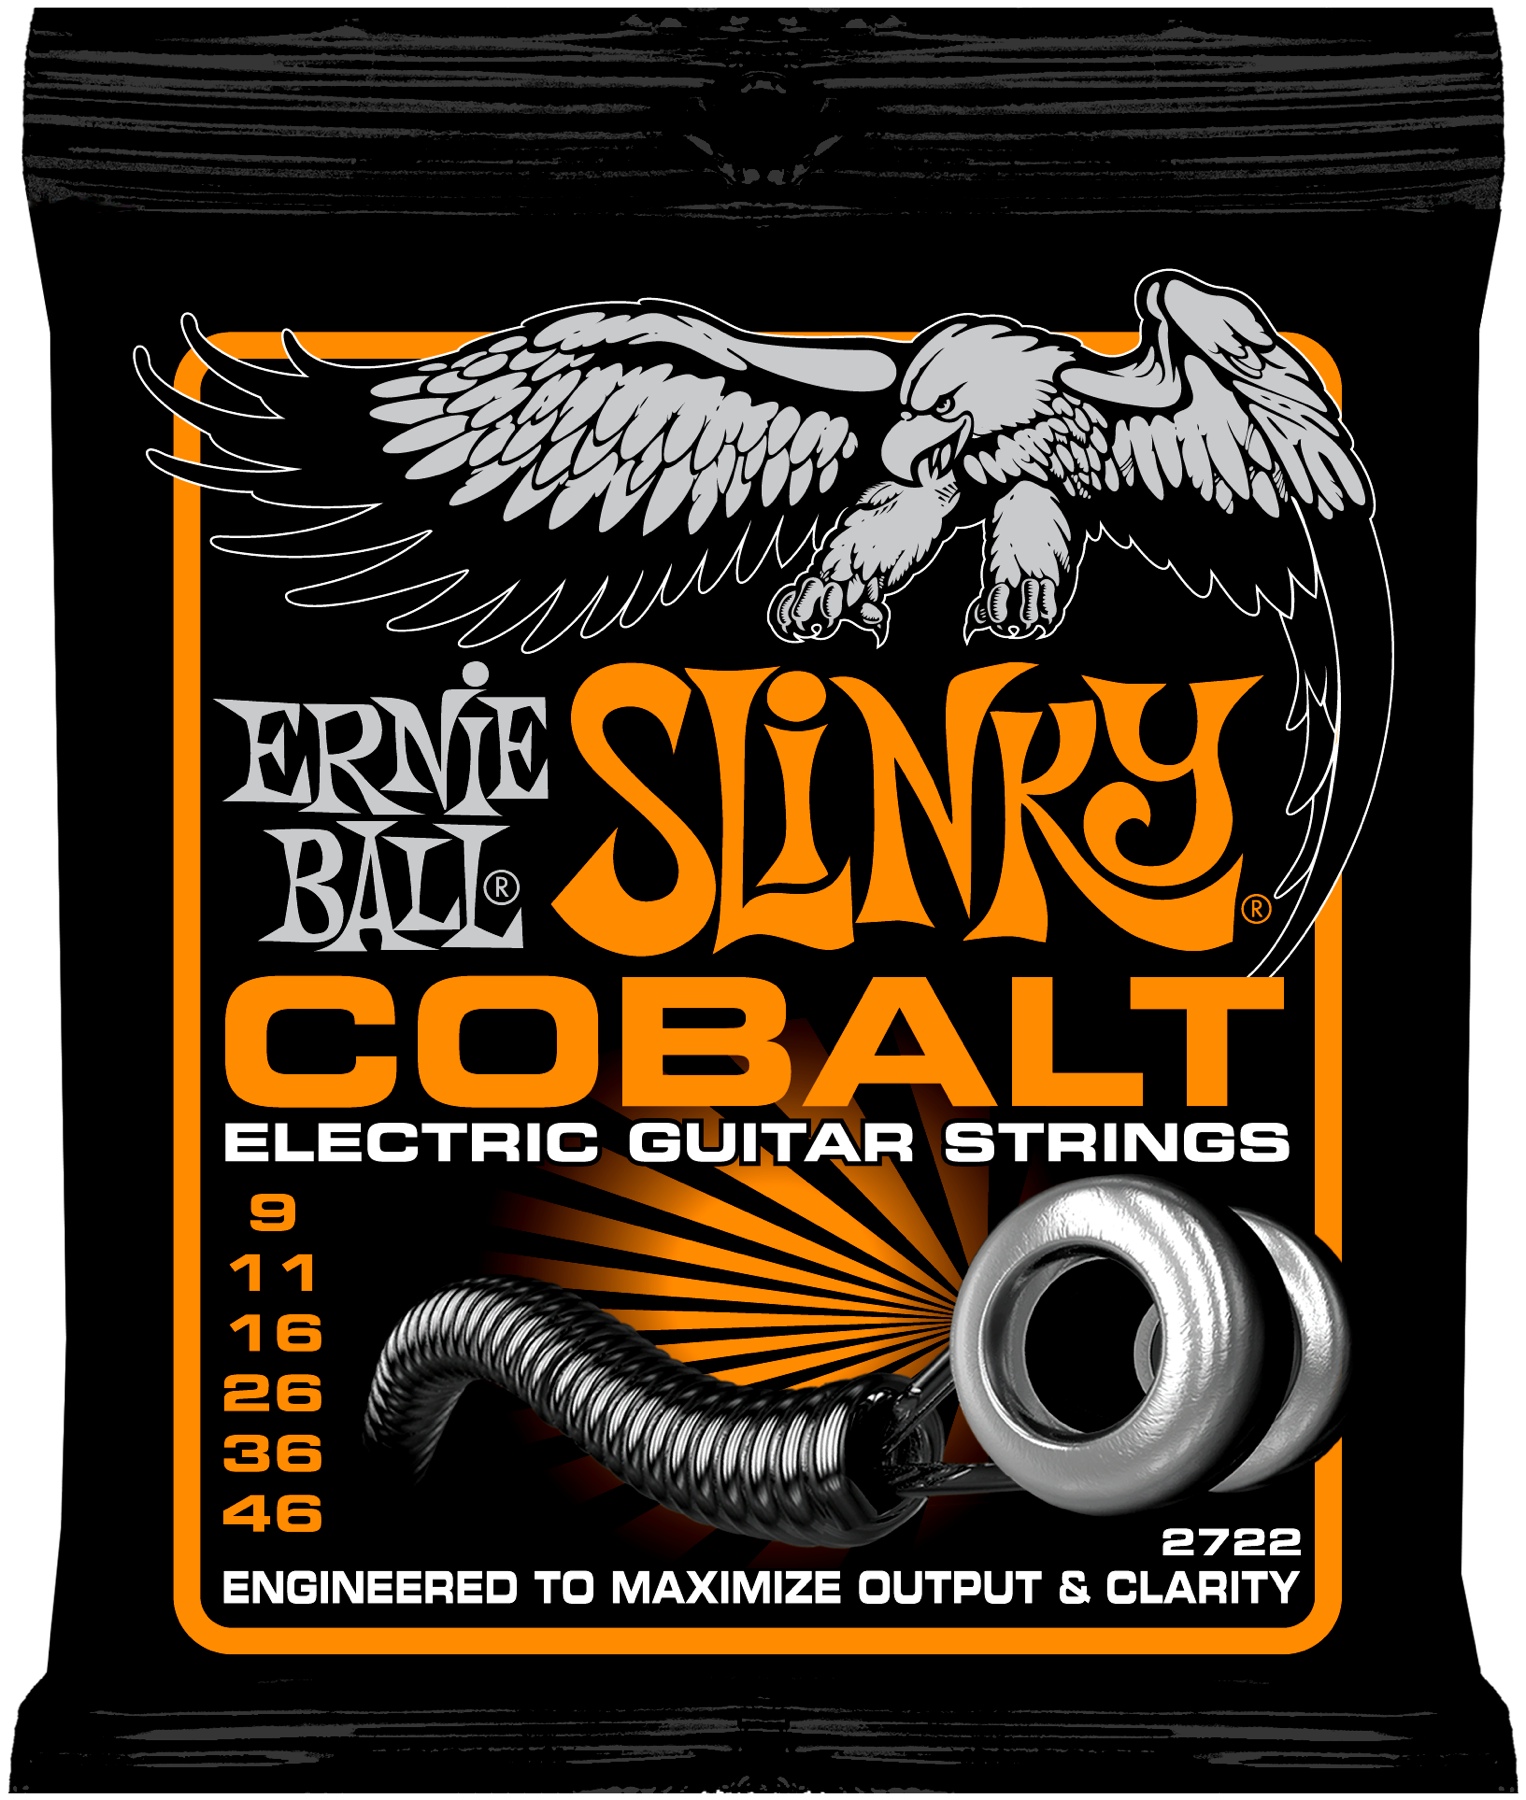 Ernie Ball 2722 струны для эл.гитары Cobalt Hybrid Slinky (9-11-16-26-36-46)